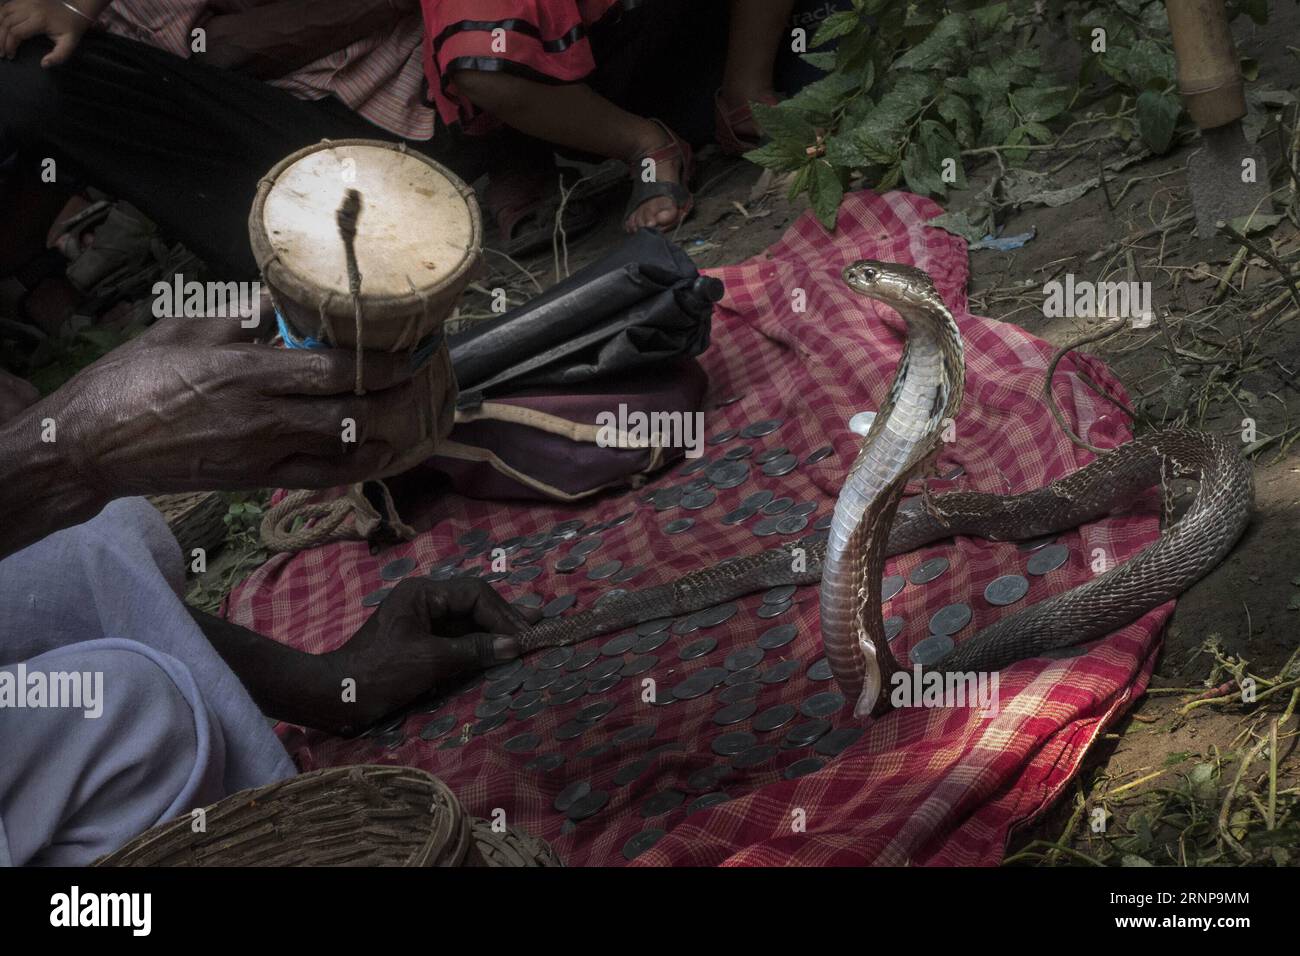 (170817) -- KHEDAITALA, 17 agosto 2017 -- gli incantatori di serpenti indiani attraggono il serpente durante il festival della dea indù Manasha a Khedaitala, circa 75 km a nord di Calcutta, capitale dello stato indiano orientale del Bengala occidentale, 17 agosto 2017. Molti incantatori di serpenti e abitanti del villaggio hanno partecipato a questo tradizionale festival per adorare la dea il giovedì. ) (gl) INDIA-KHEDAITALA-SNAKE FESTIVAL TumpaxMondal PUBLICATIONxNOTxINxCHN Khedaitala 17 agosto 2017 gli incantatori di serpenti indiani attraggono Snake durante il Festival della dea indù Manasha A Khedaitala A circa 75 KM a nord di Kolkata capitale dell'India orientale Foto Stock